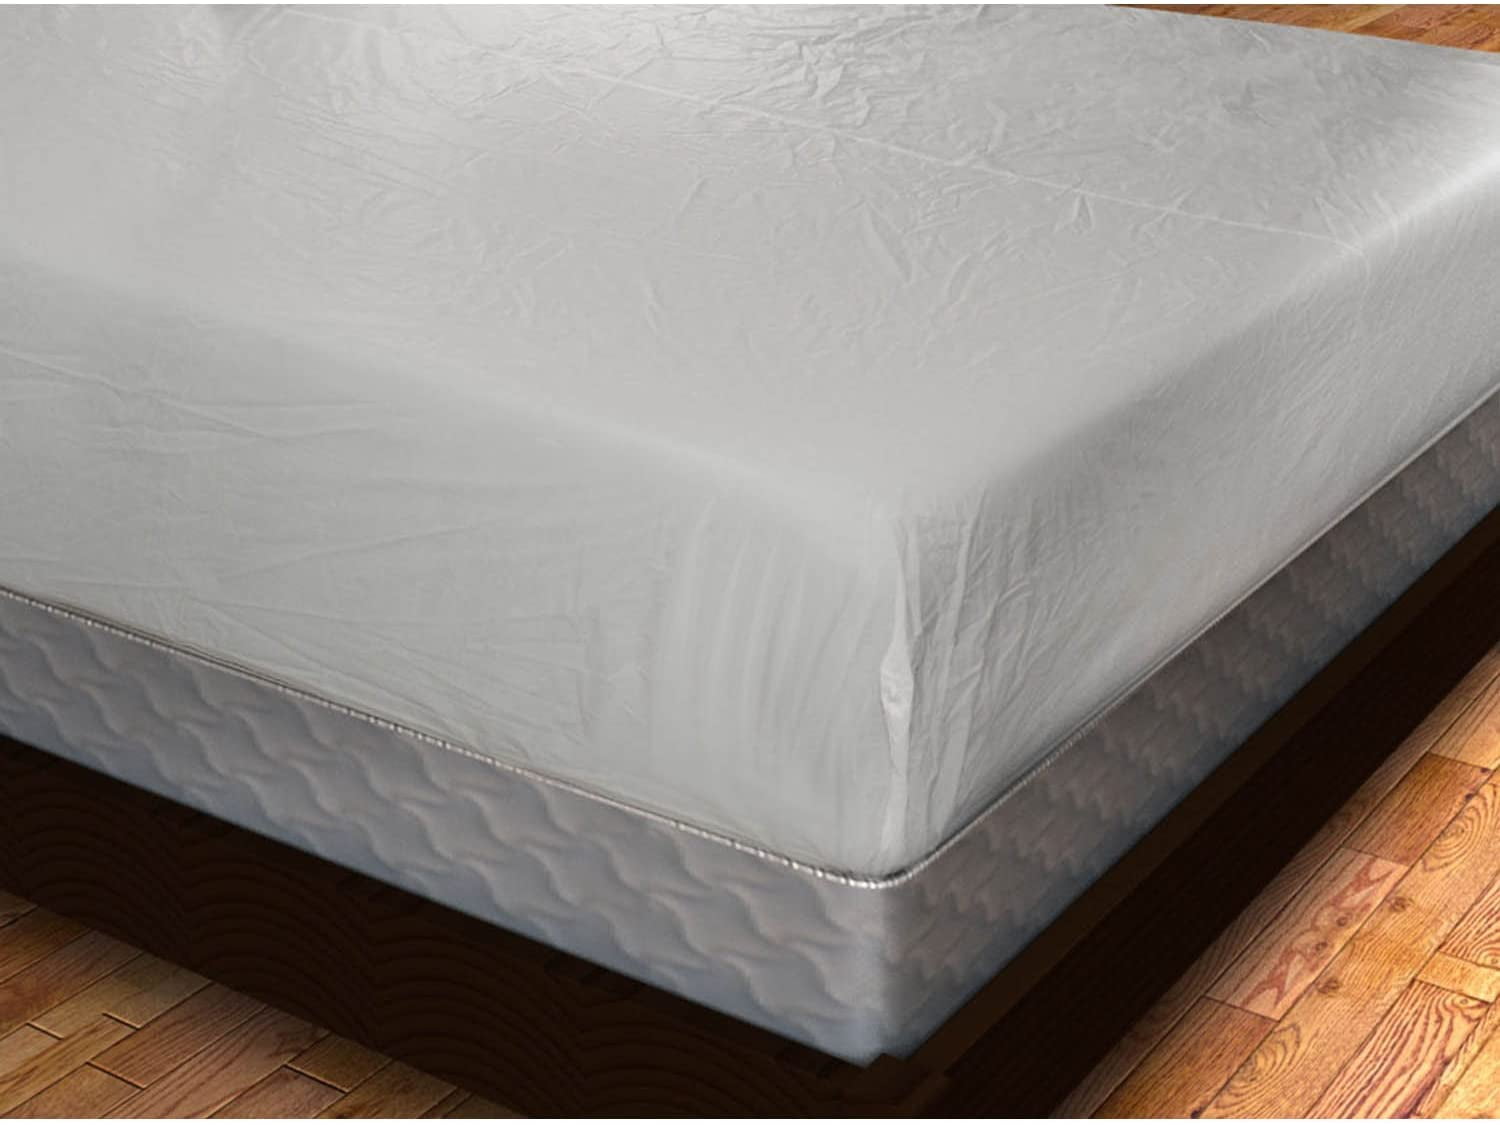 plastic mattress full size